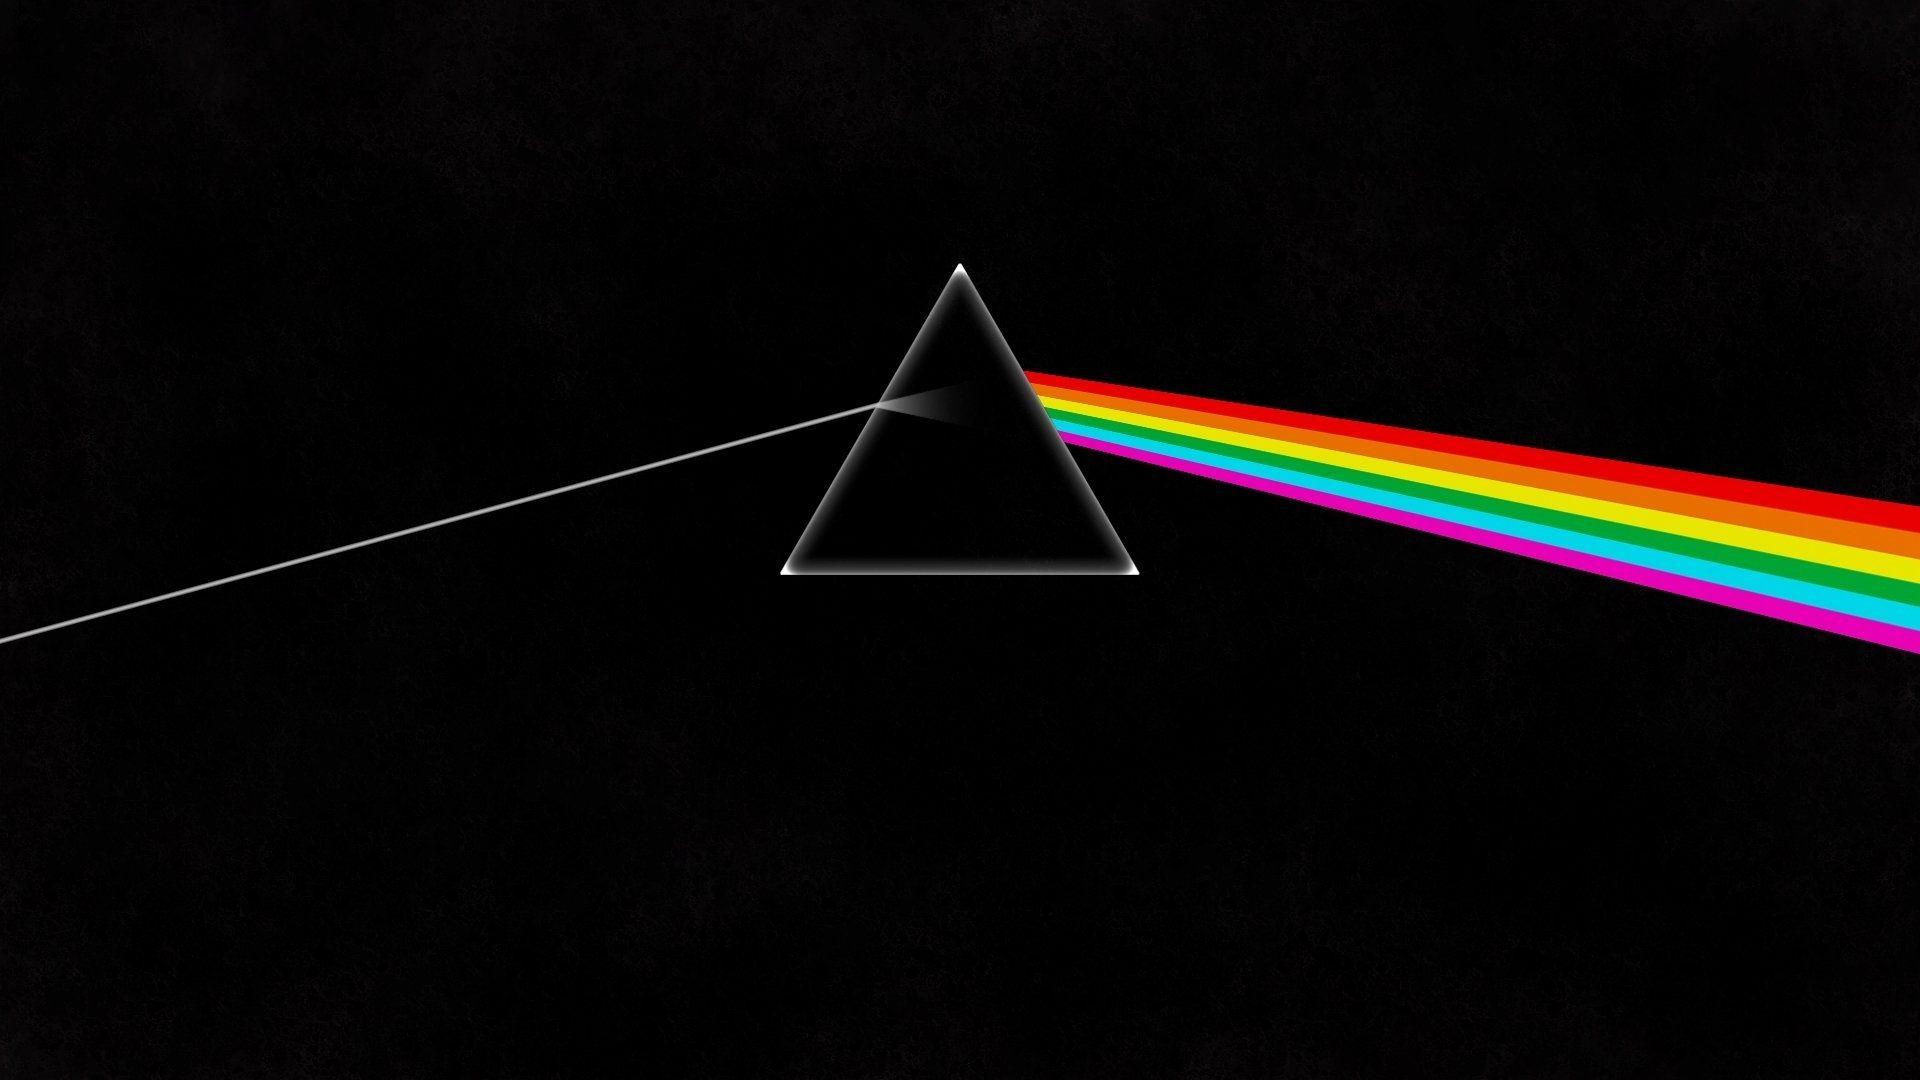 10 Top Pink Floyd Dark Side Of The Moon Wallpapers FULL HD 1920×1080